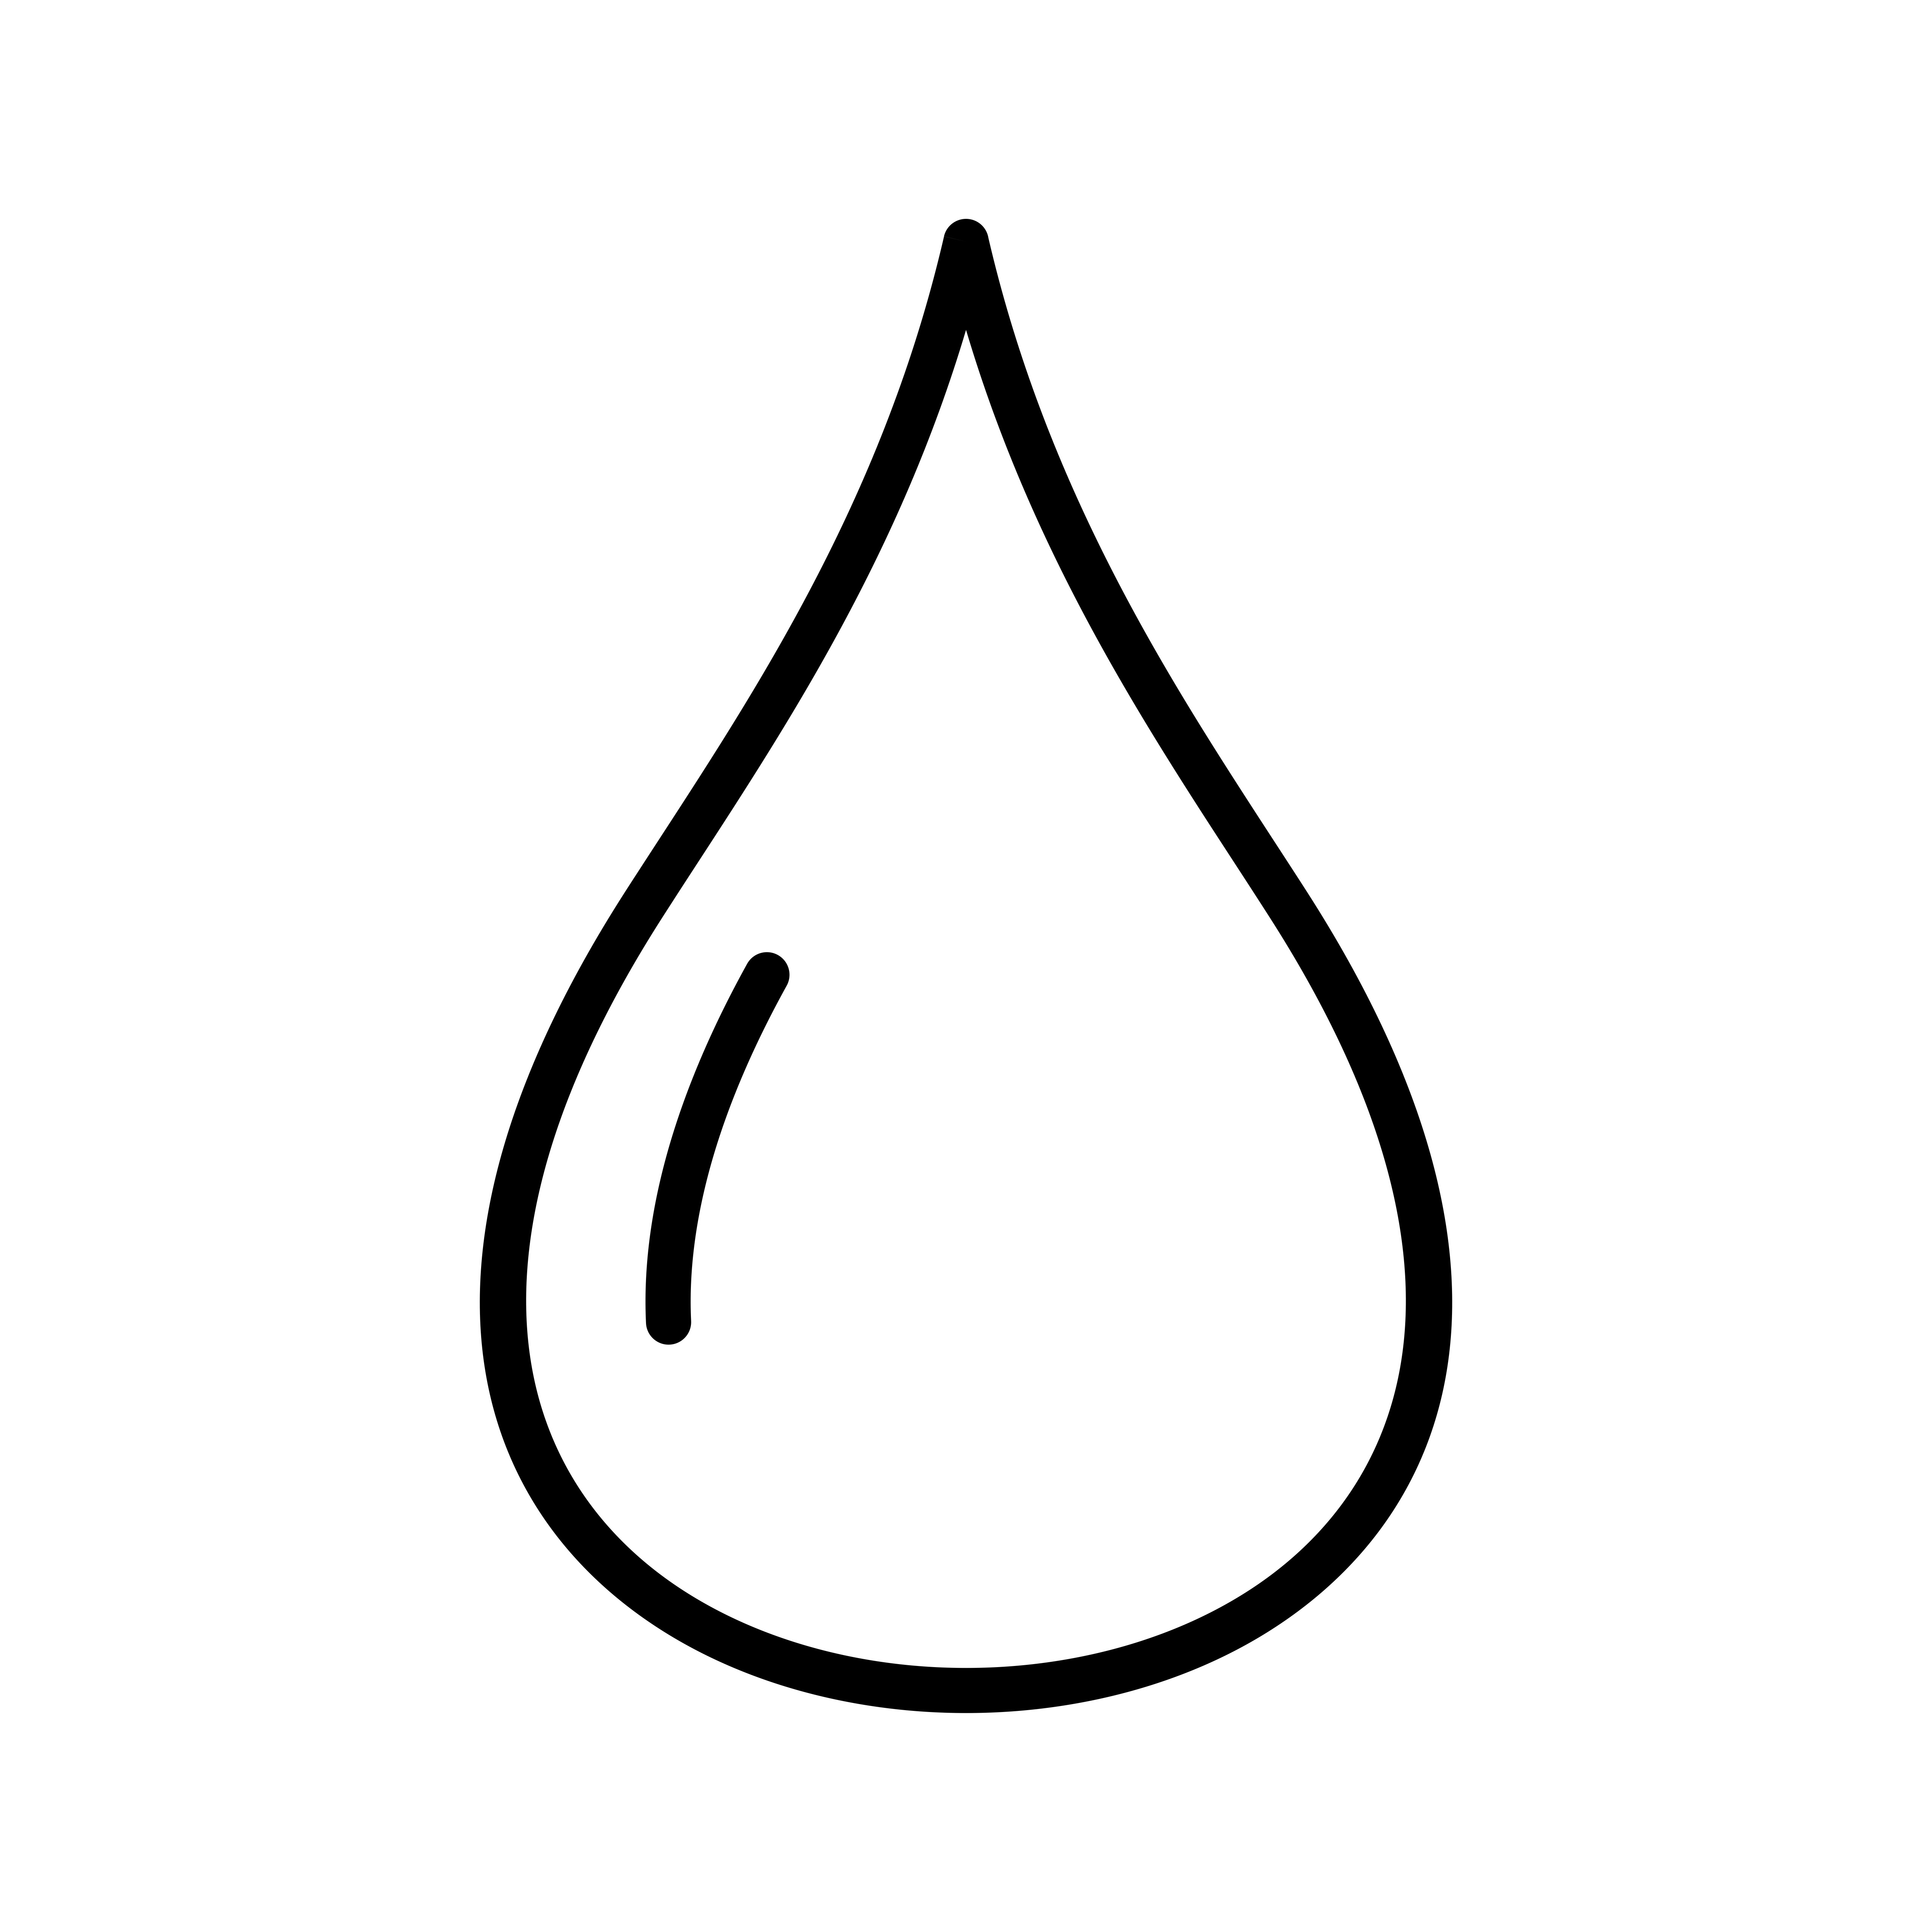 Water Drop Line Black Icon - Download Free Vectors ...